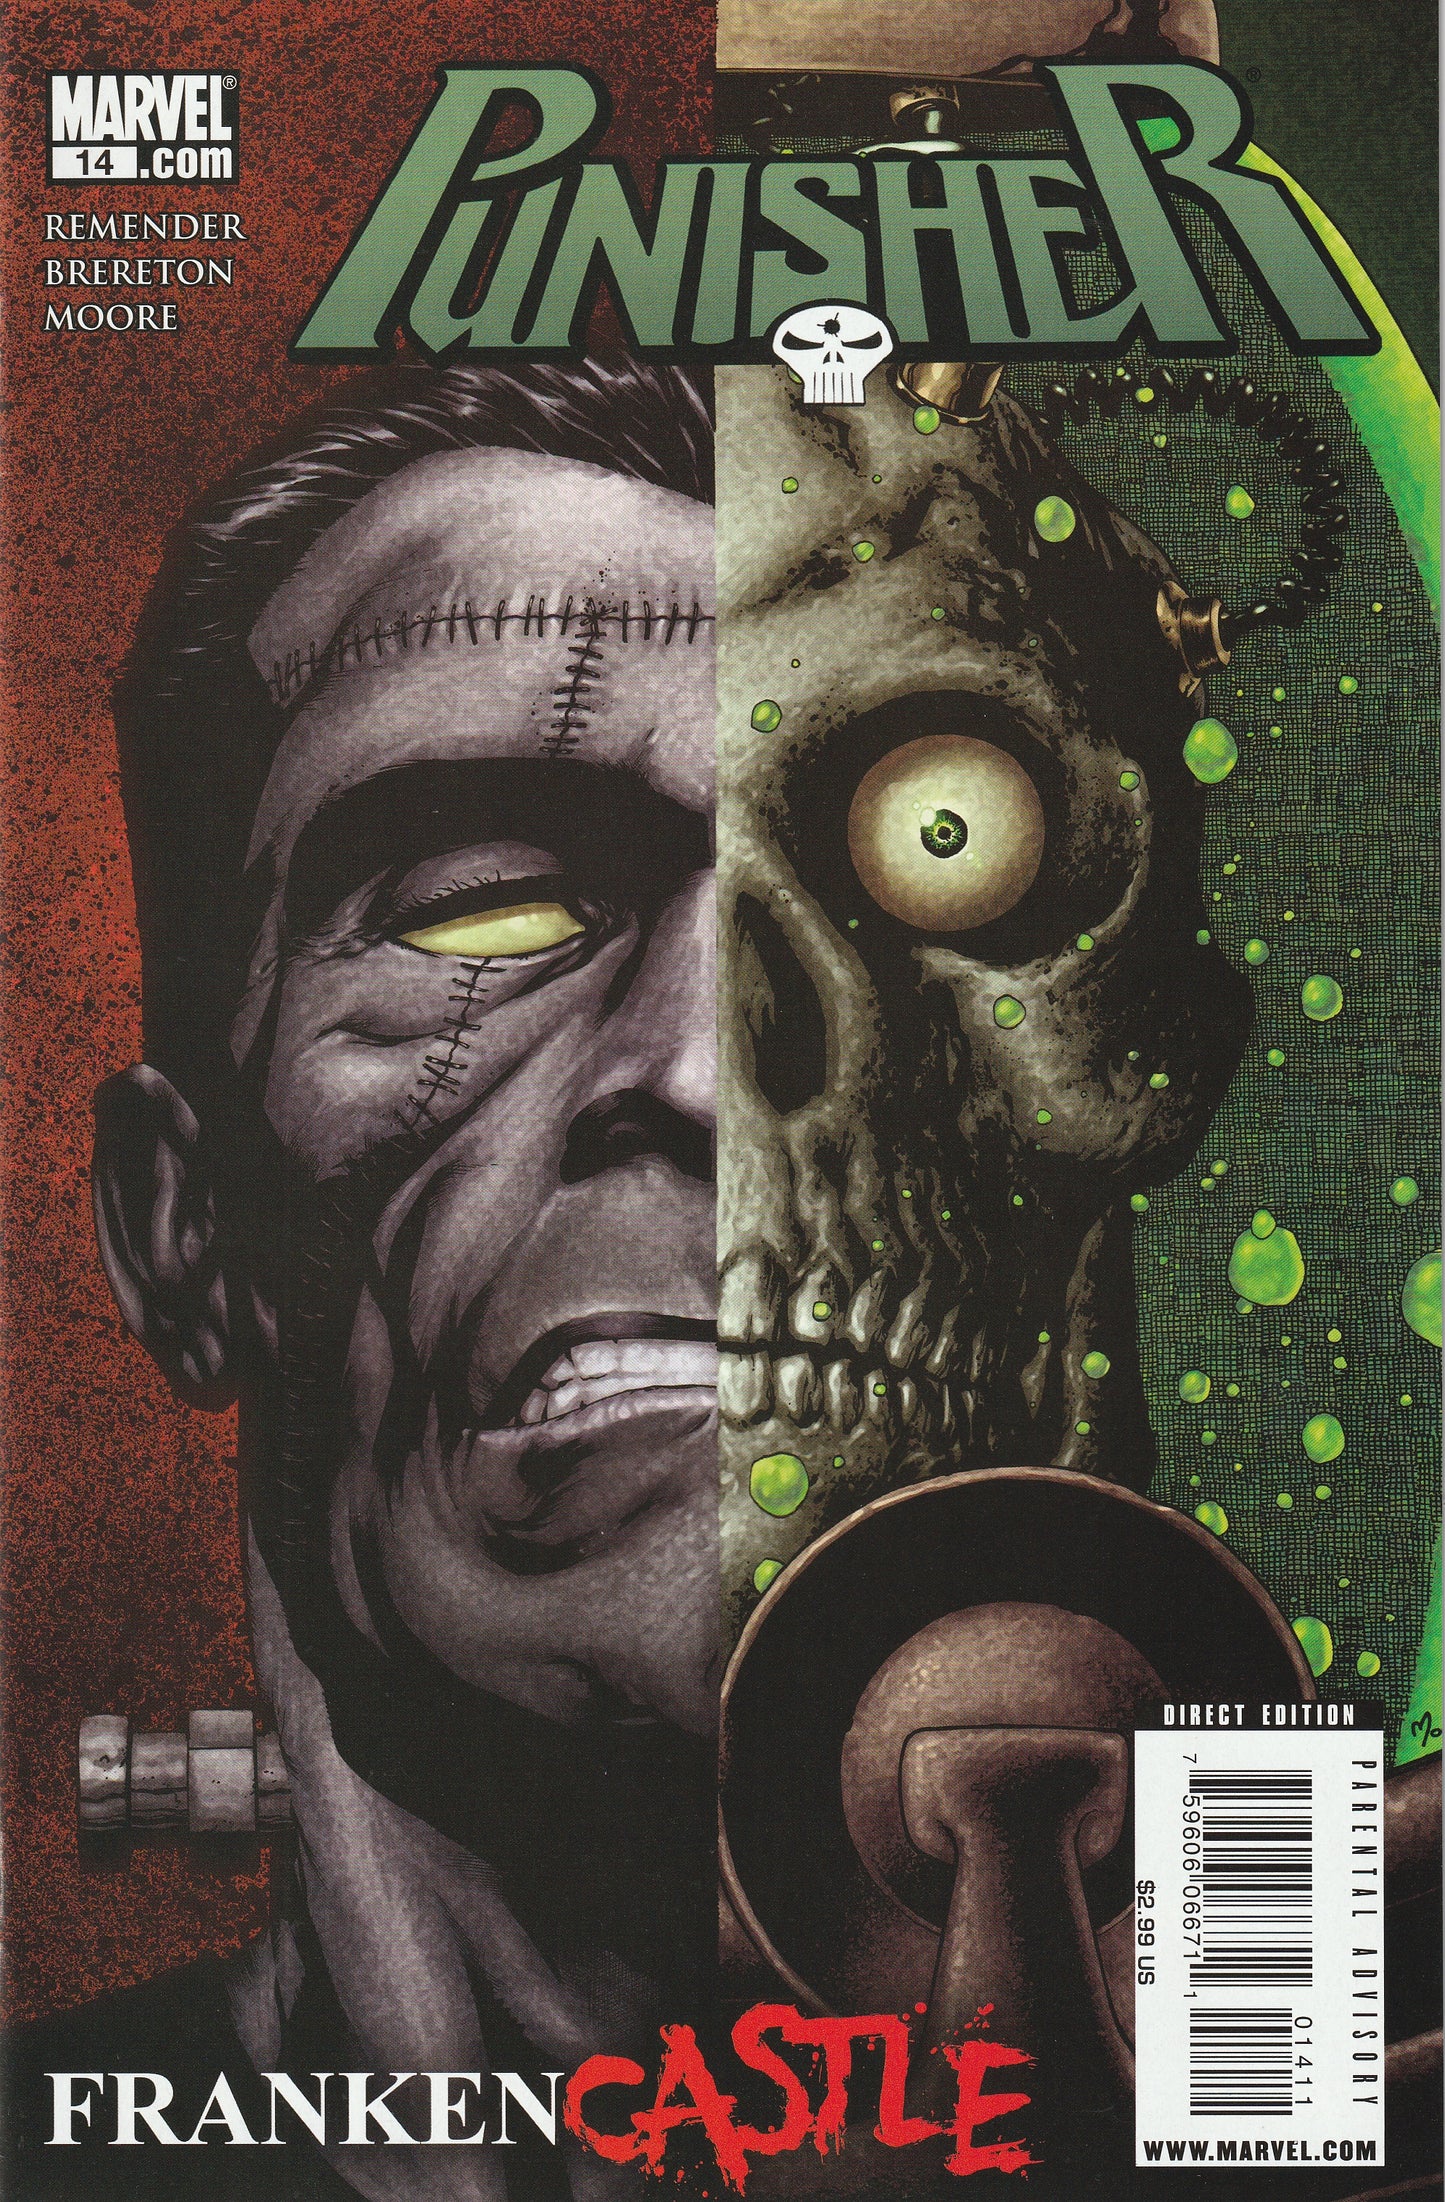 The Punisher #14 (Vol 8, 2010) - Franken-Castle